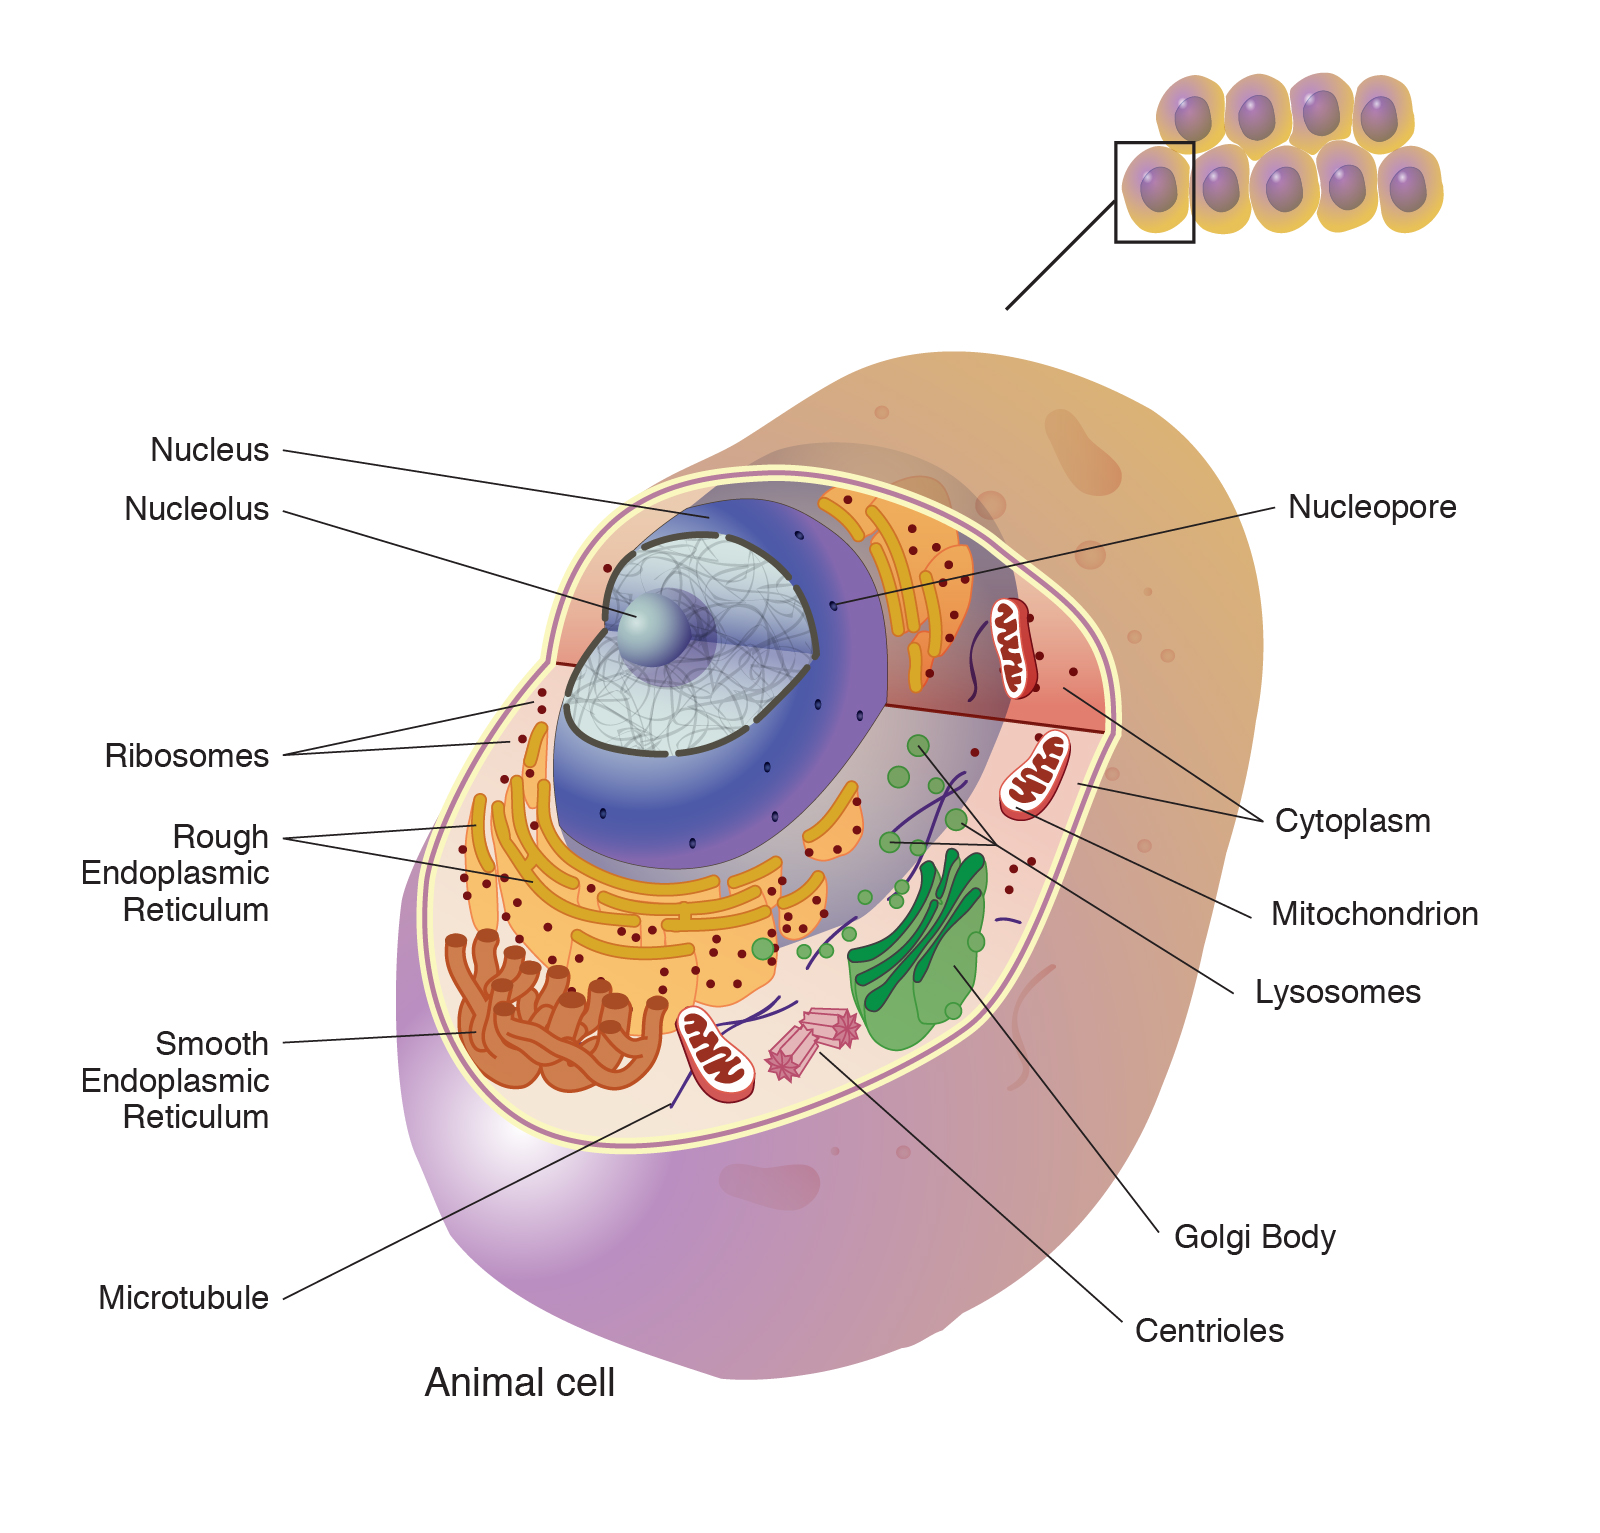 human cell membrane